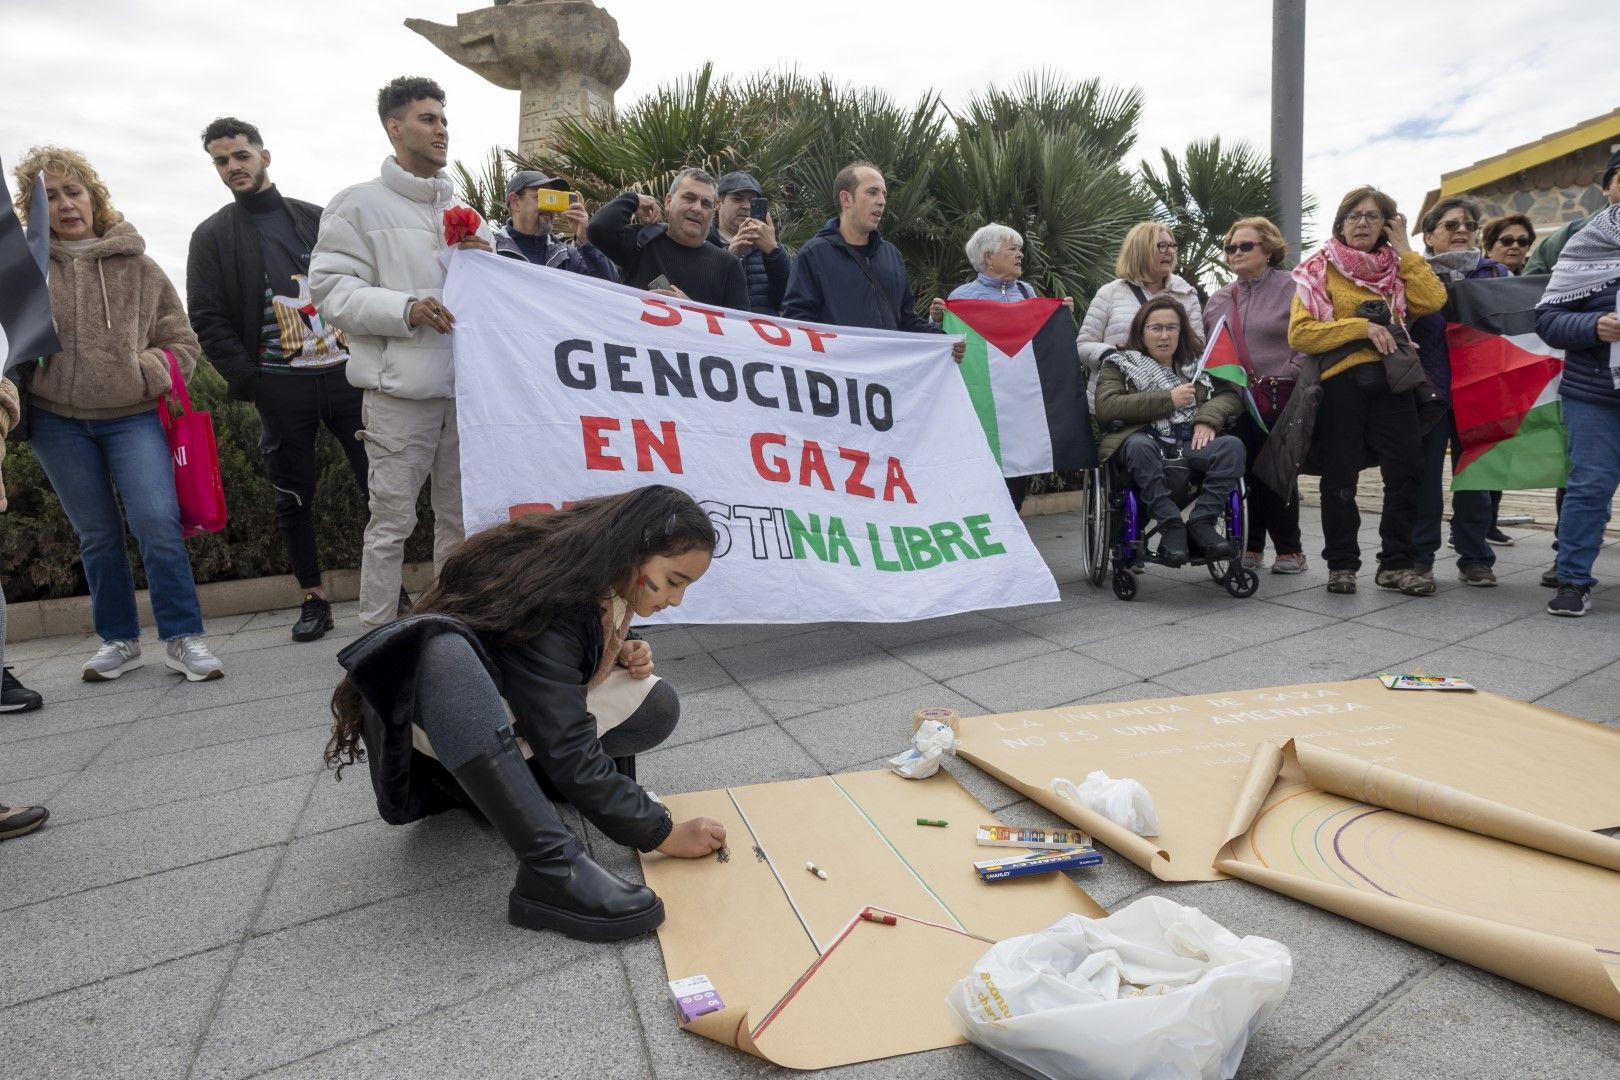 Una concentración en Torrevieja reclama "parar el genocidio en Gaza"